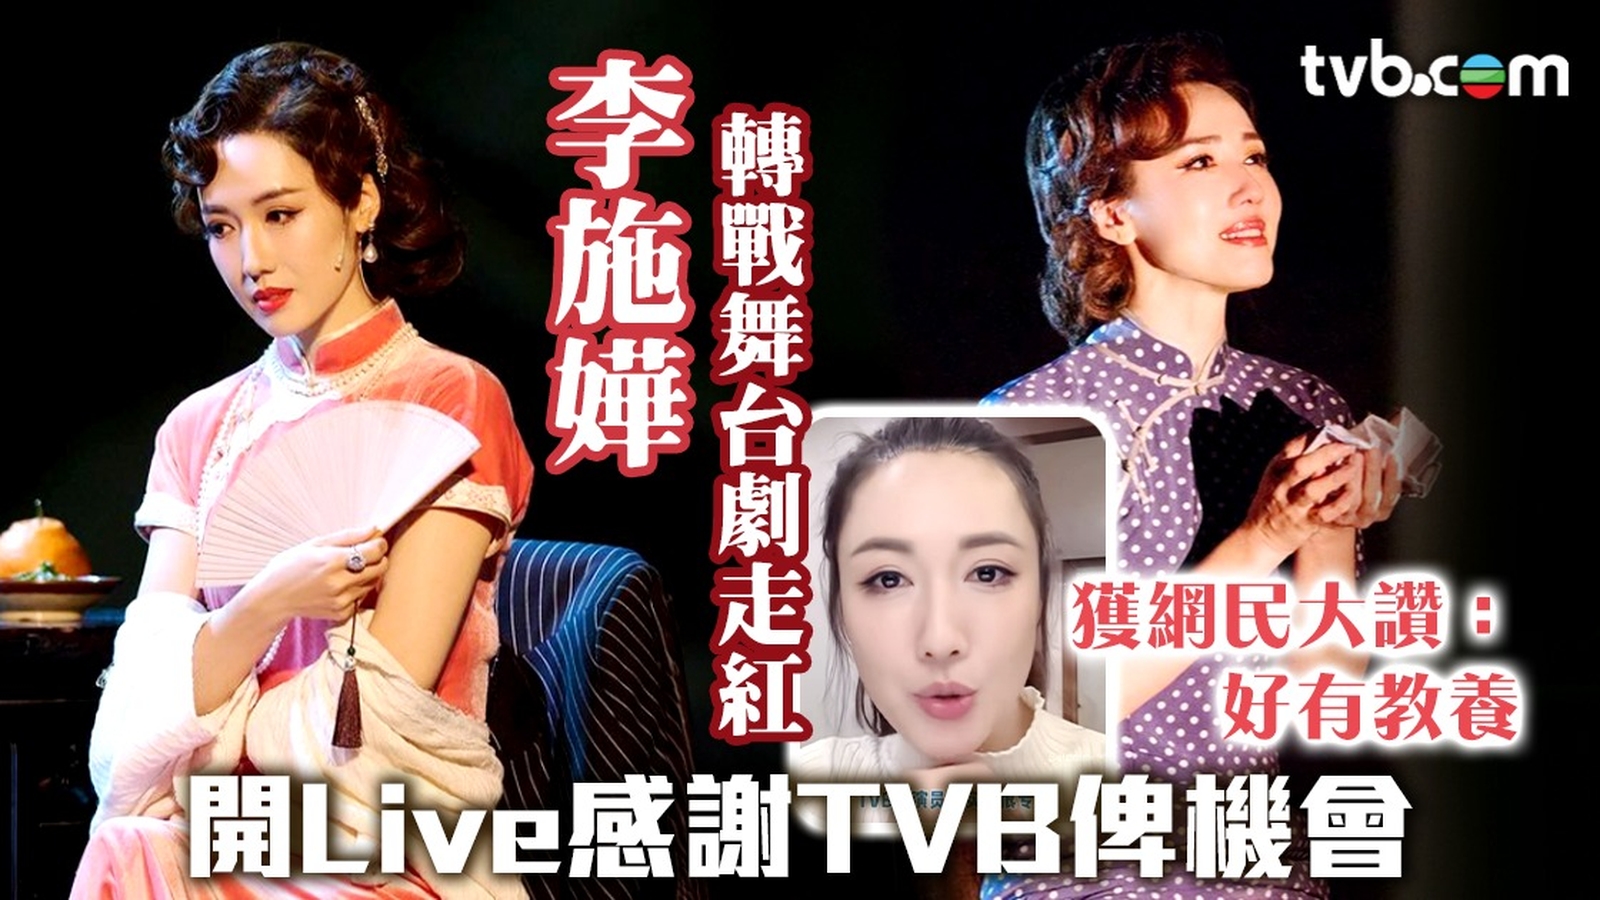 李施嬅轉戰舞台劇走紅 開Live感謝TVB俾機會 獲網民大讚：好有教養